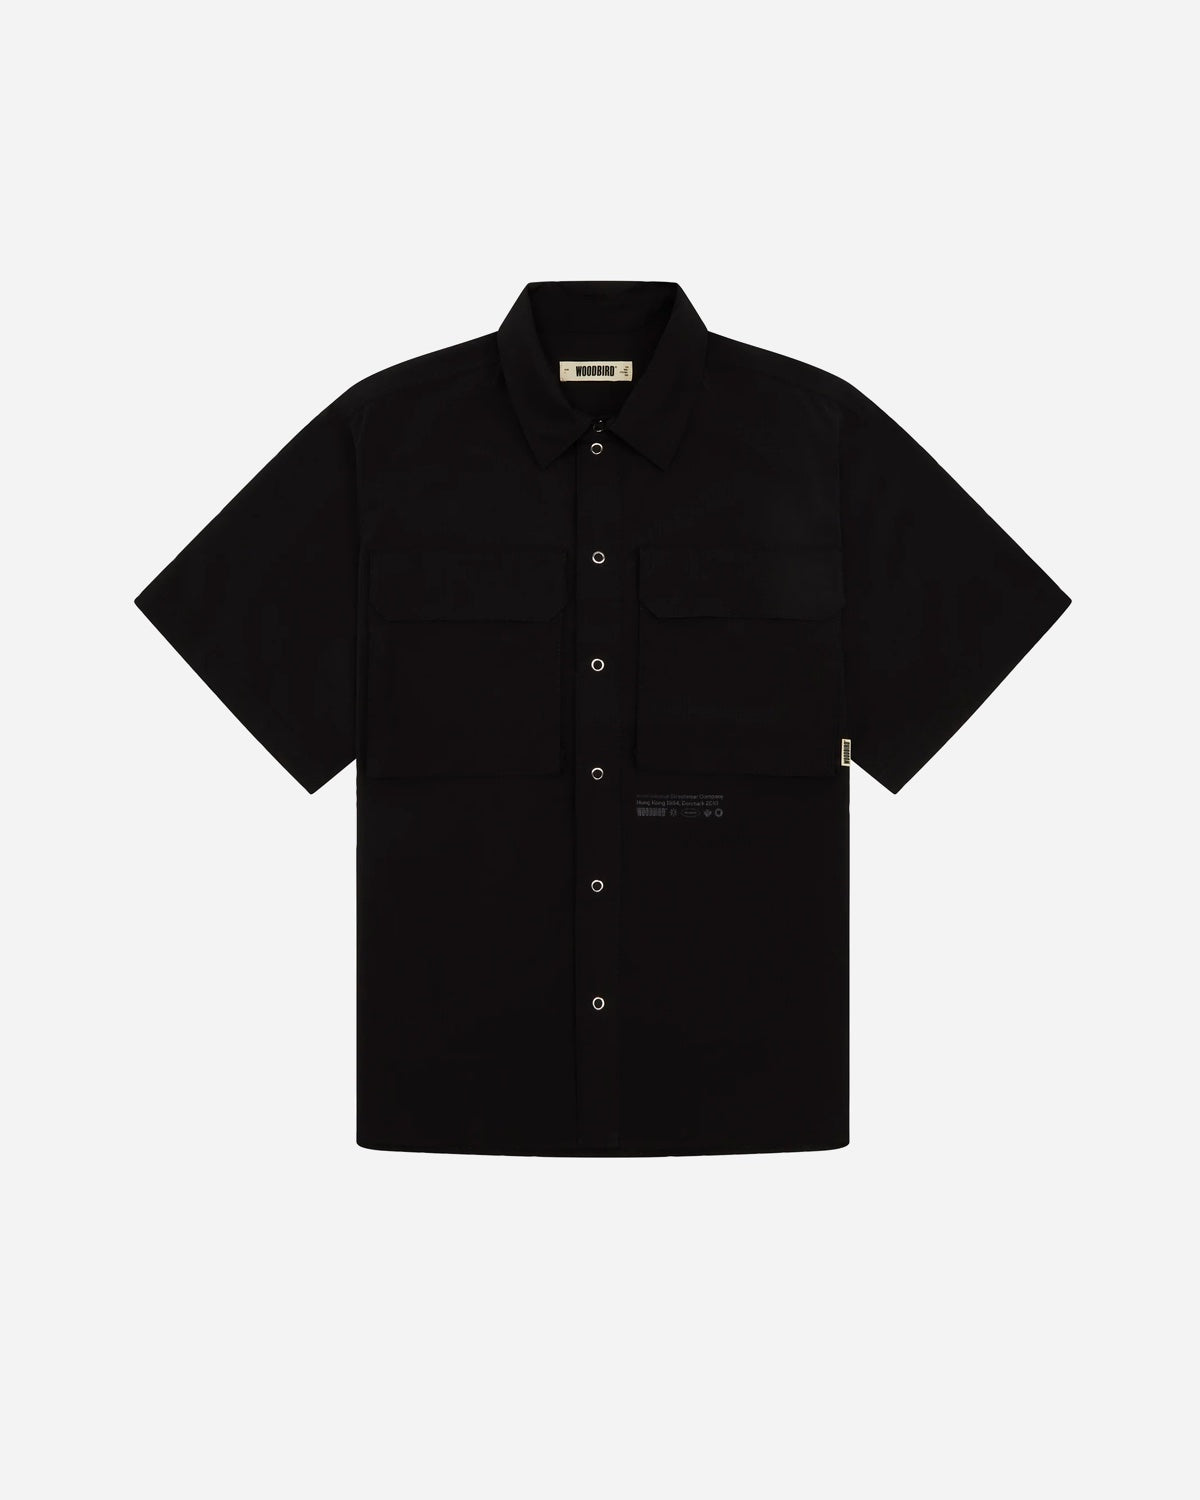 Banks Rib-Tech Shirt - Black